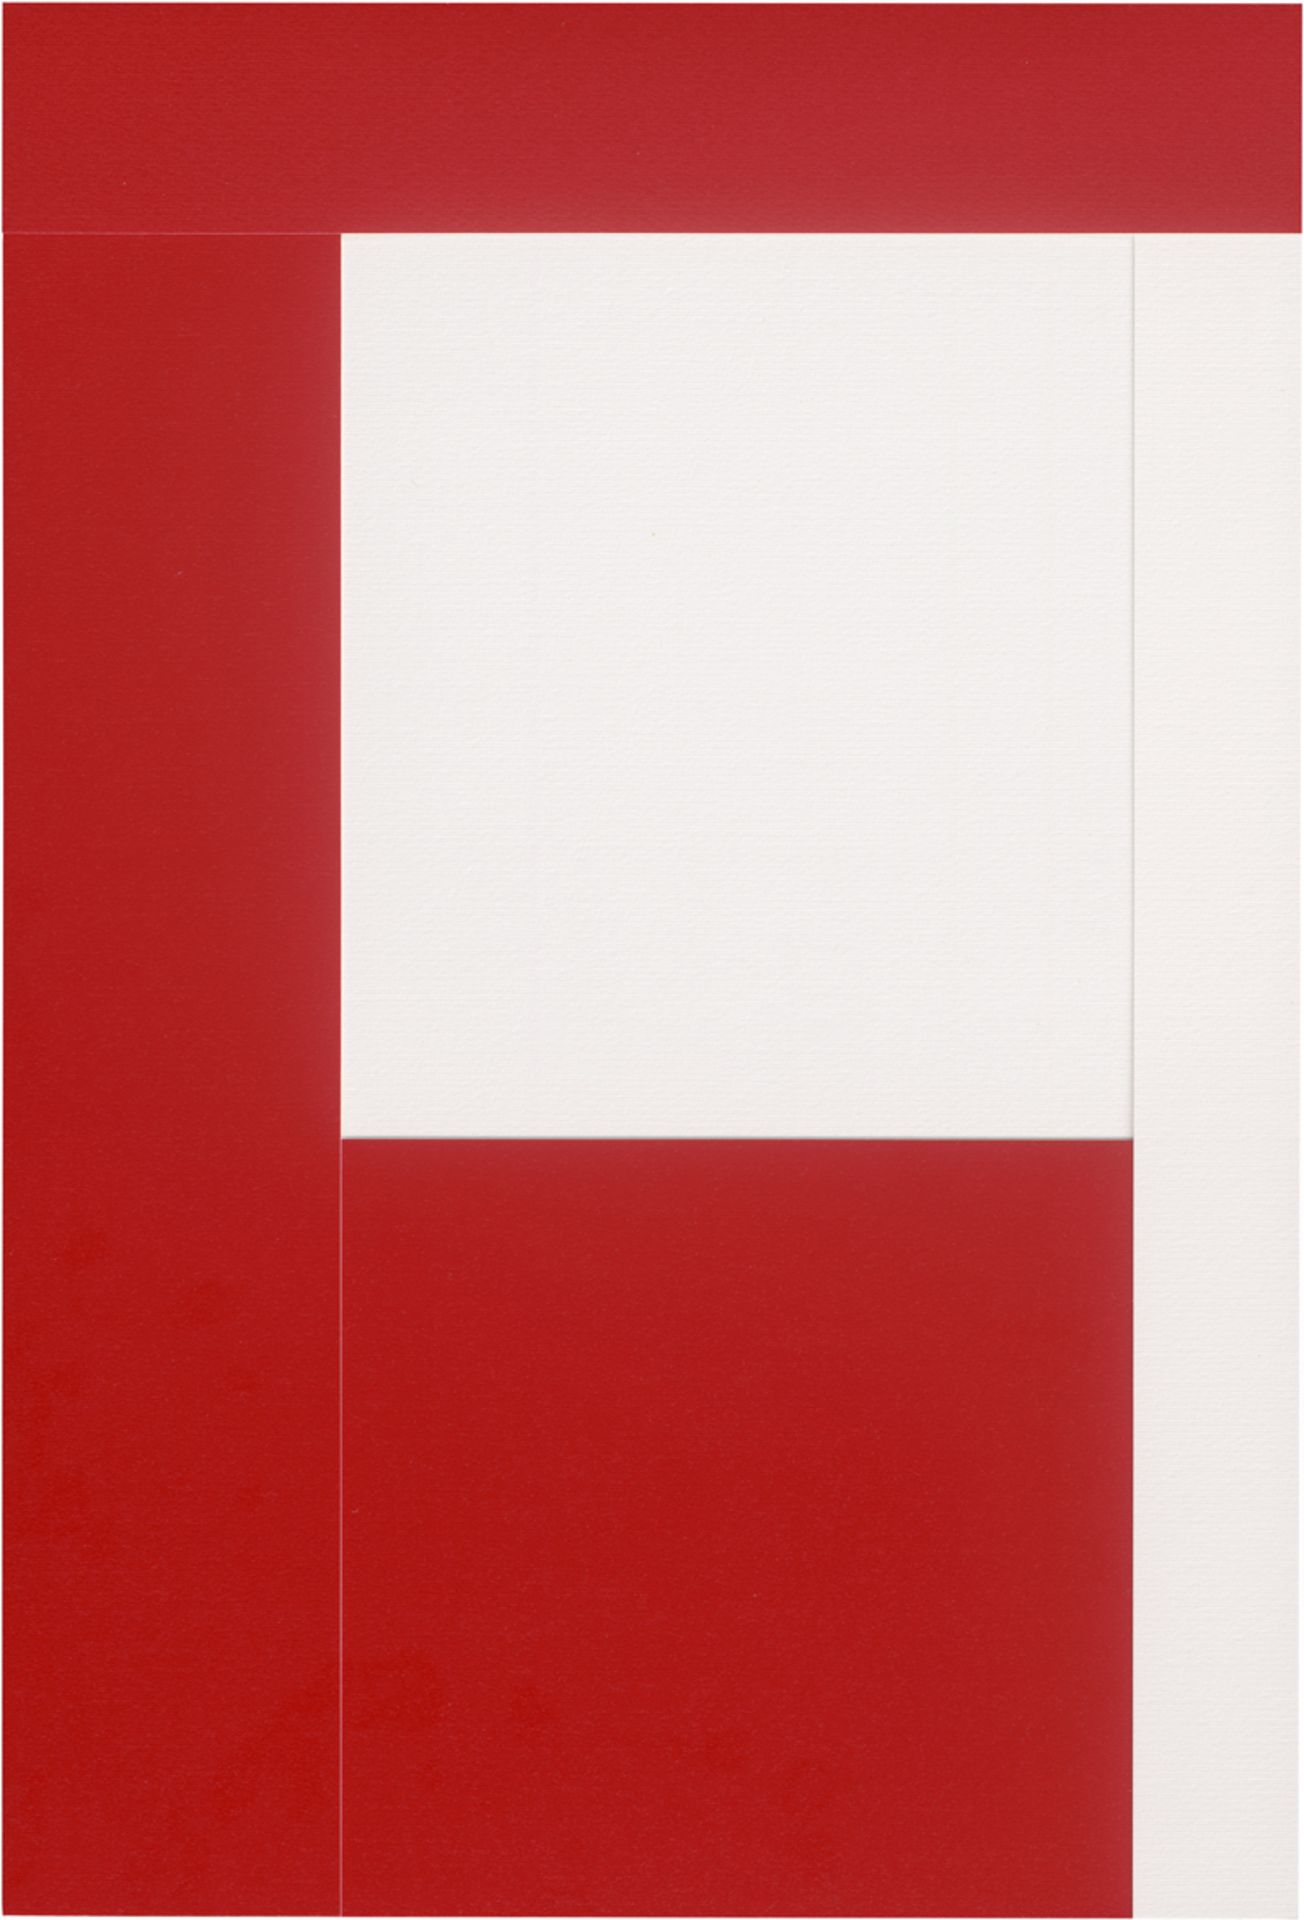 Knoebel, Imi: Rot-Weiß - Bild 3 aus 10